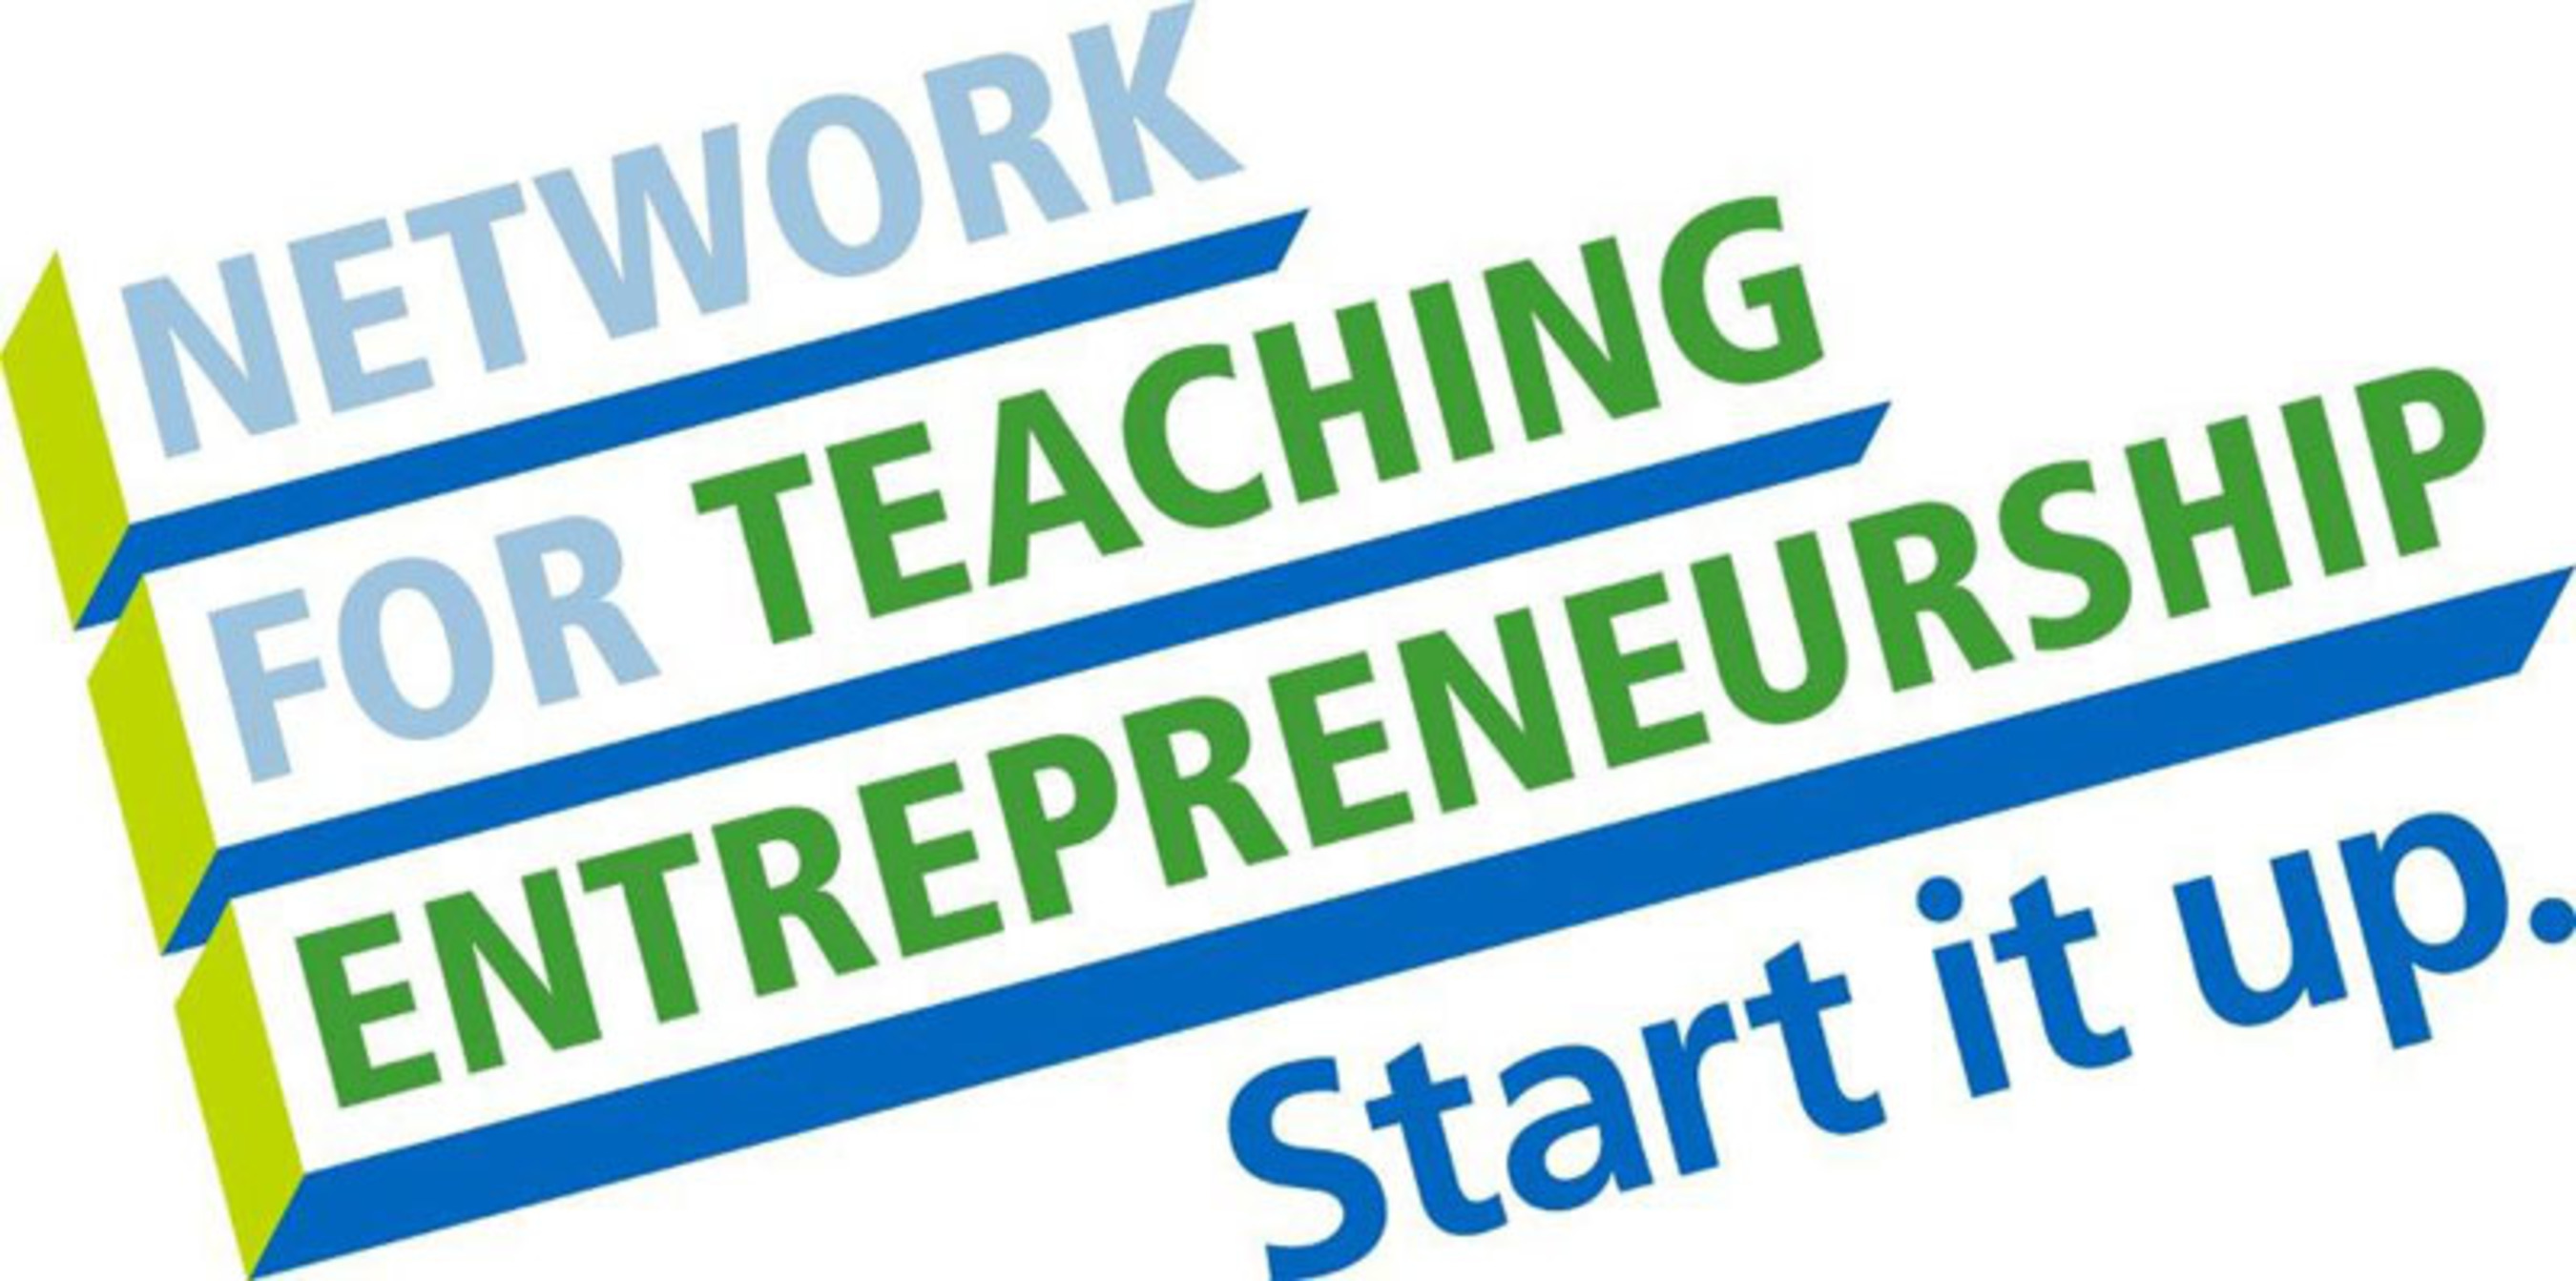 Network for Teaching Entrepreneurship.